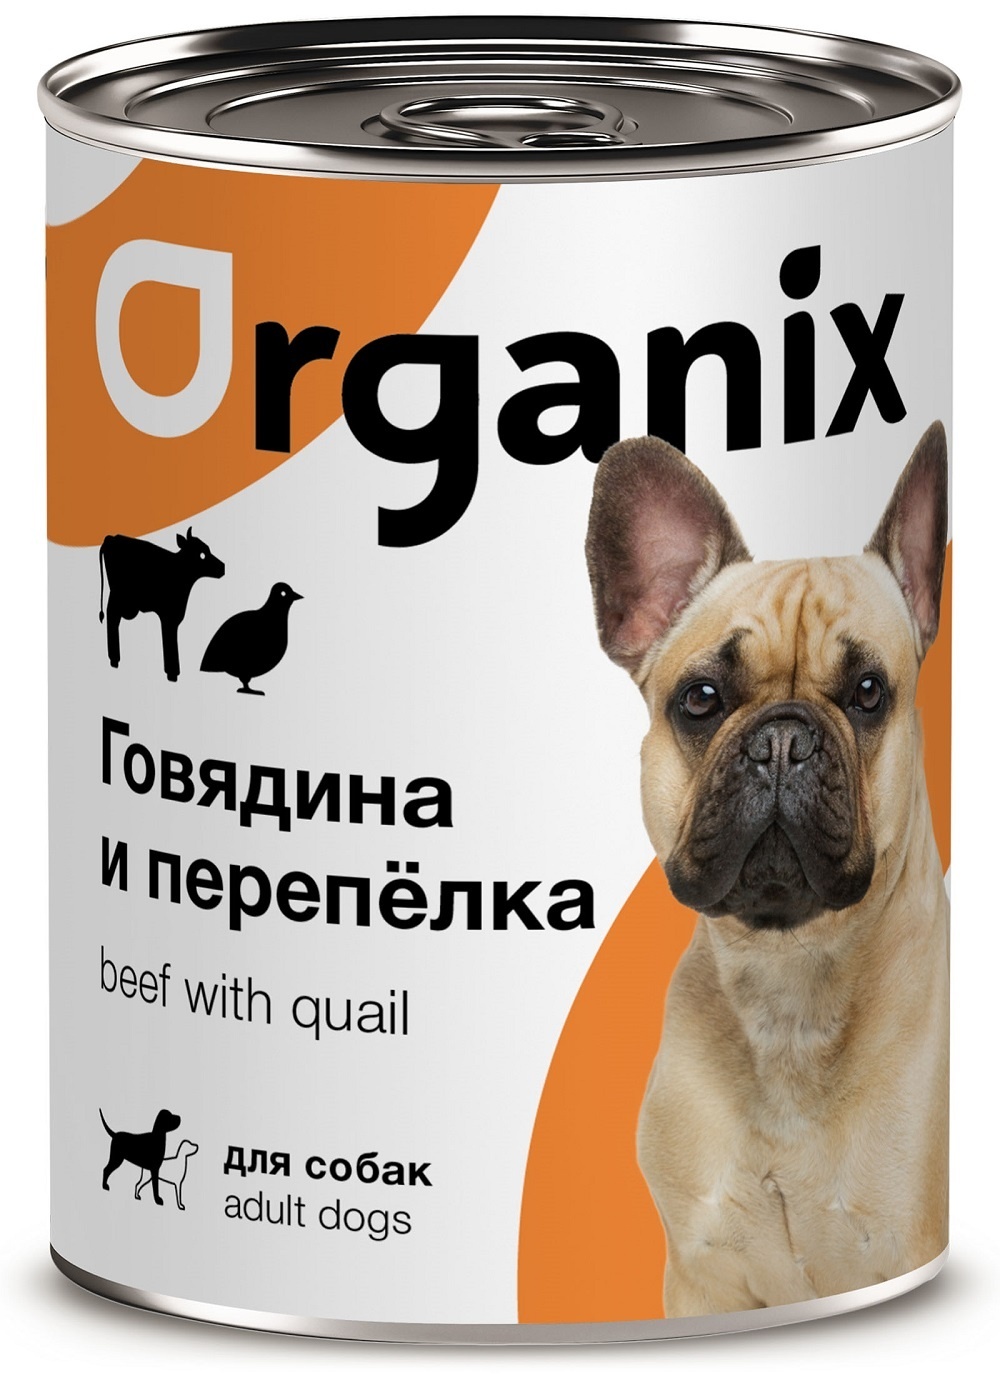 Organix консервы Organix консервы для собак, с говядиной и перепелкой (410 г) organix консервы organix консервы с говядиной и рубцом для собак 410 г